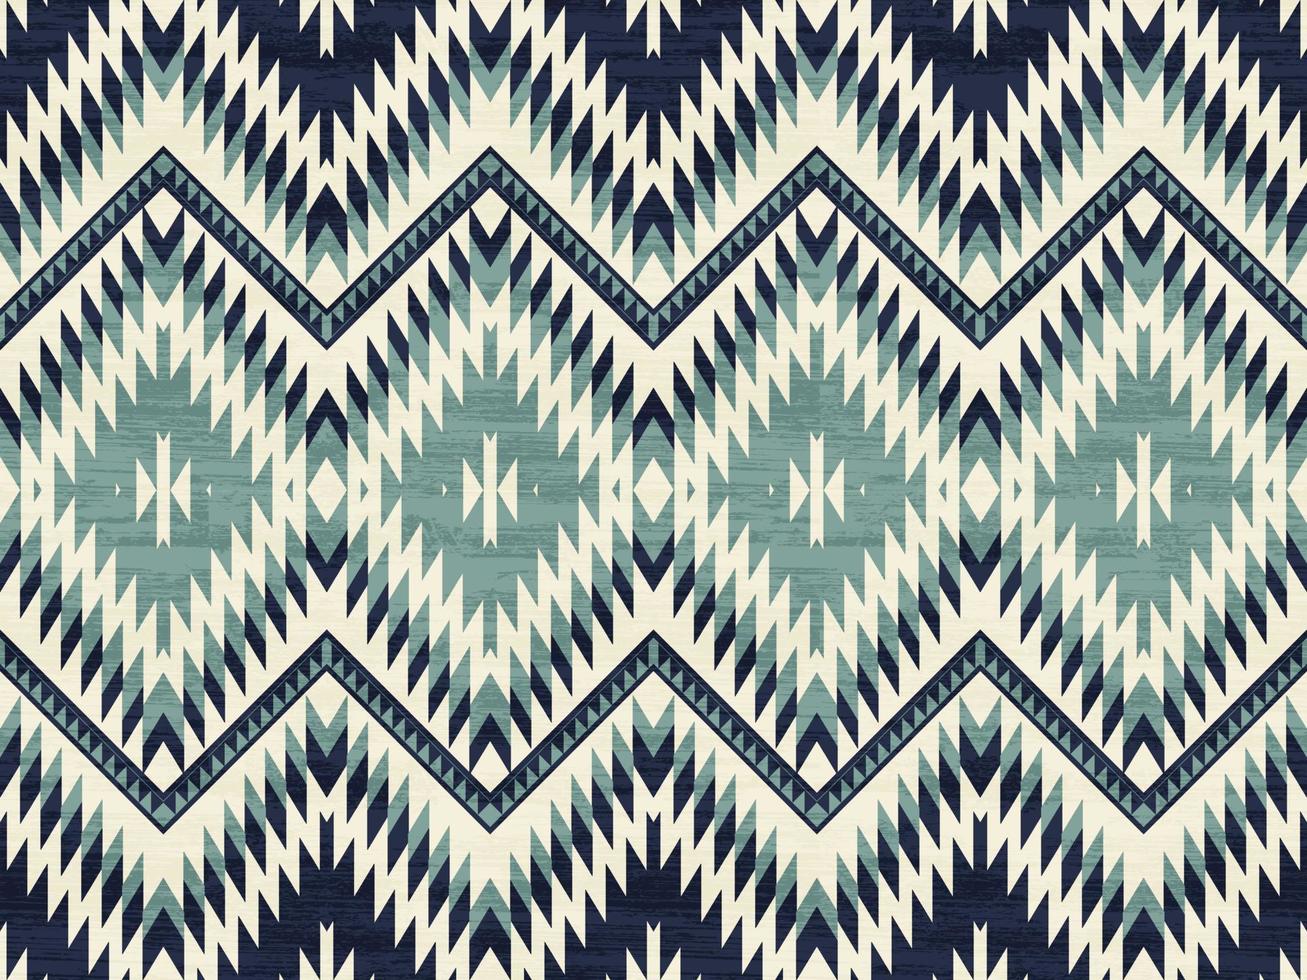 nativo americano indios ornamento modelo geométrico étnico tejidos textura tribal azteca patrón navajo mejicanos telas vector ornato moda